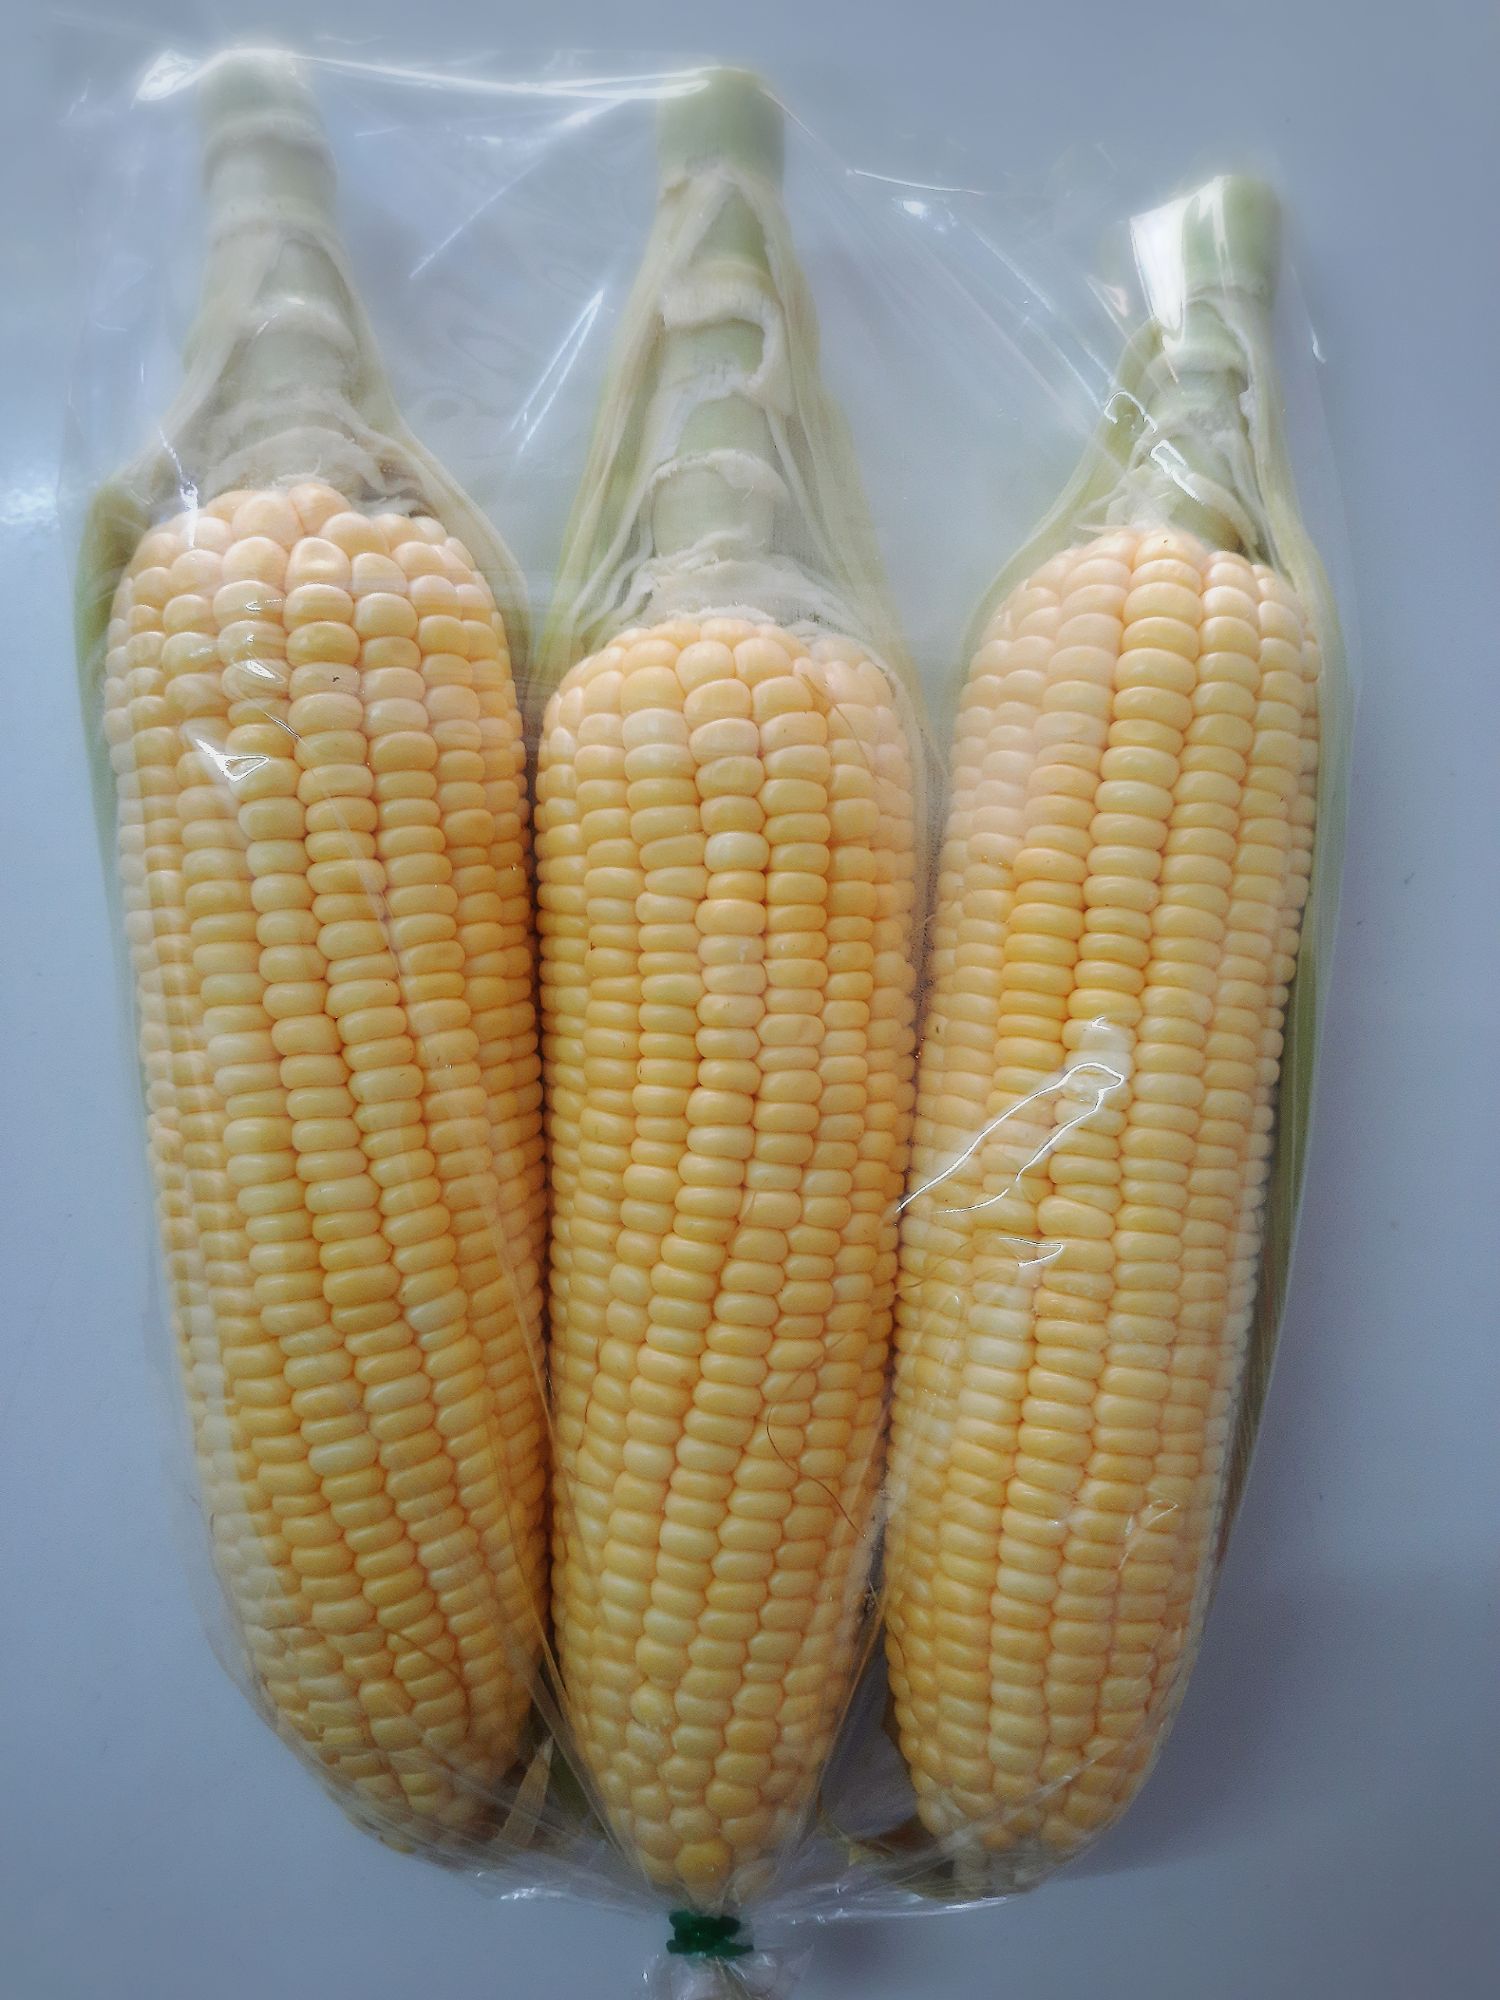 🌽ข้าวโพดหวาน (Sweet corn) 🌽แพค 3 ฝัก